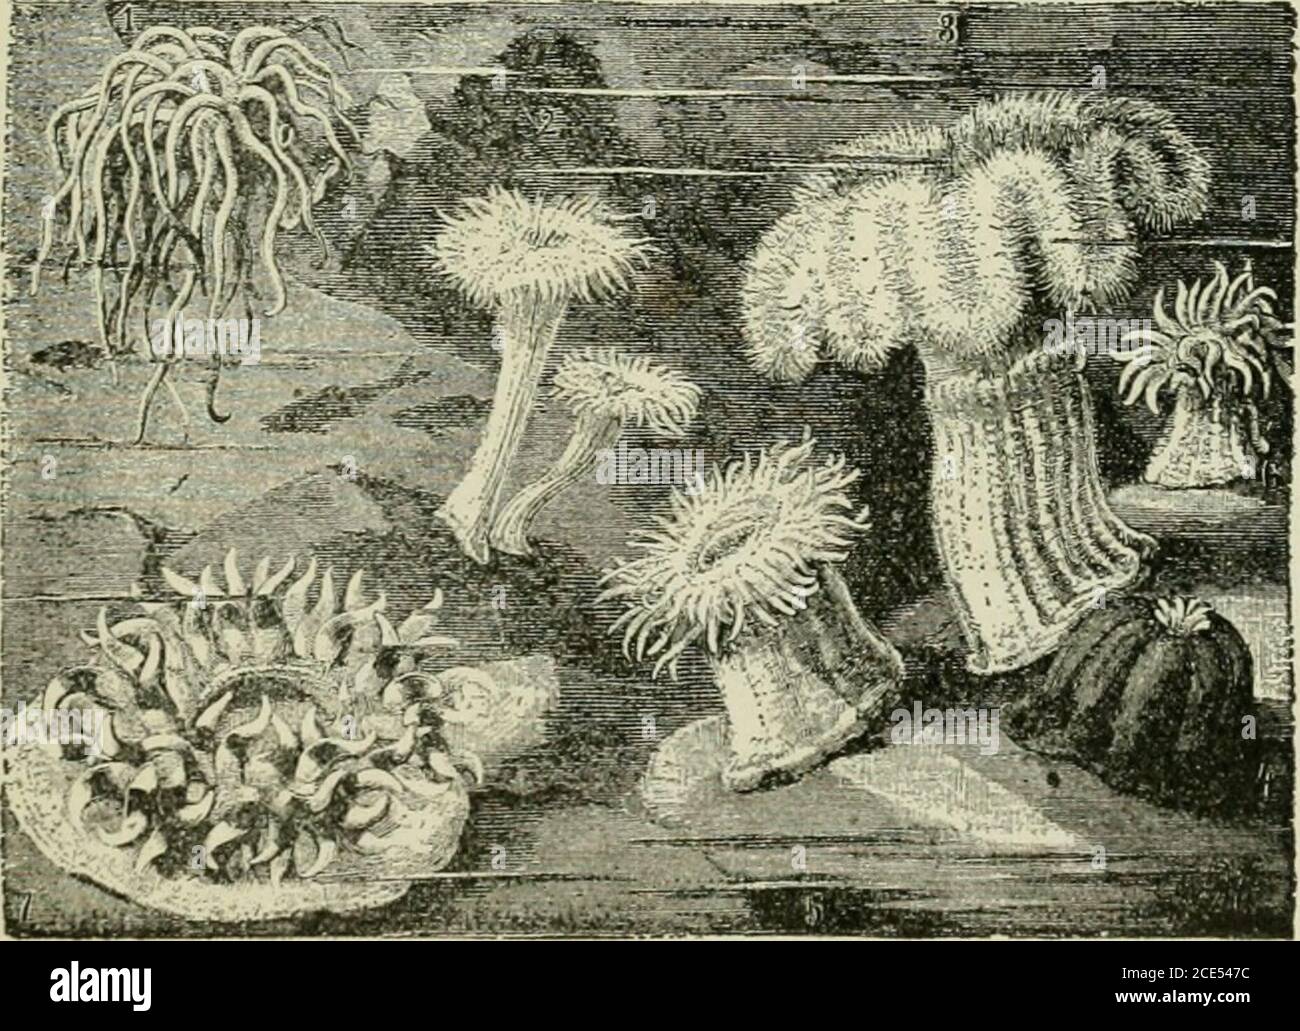 . Zoologie Für Anfänger . Die Seeanemone lebt, wie der Korallenpolyp, im Meer, aber wie die Süßwasser-hydra, legt sie keinen kalkigen Sipport für ihren Körper ab. Die Anemone ist viel größer als dieHydraund die meisten Coralpolypen, viele spe-cies bei-Erhaltung Höhe vonseveralinches. Itdocs nicht bilden colo-nies. Wenn seine Arme eingezogen werden, sieht es aus wie ein großer Knauf aus glänzendem, aber undurchsichtigem Gelee. Polypen wurden früher soophytcs {Pflanzen-Tiere genannt), wegen ihres blumenähnlichen Aussehens (Abb. 50, 51). Abb. 49. - aufrechte cxrrrthrough Korallenpolyp X 4. 7ns, Mund; inr, Gullet; is, ist, fleischige Scheidewände (mesen-teries) exten Stockfoto